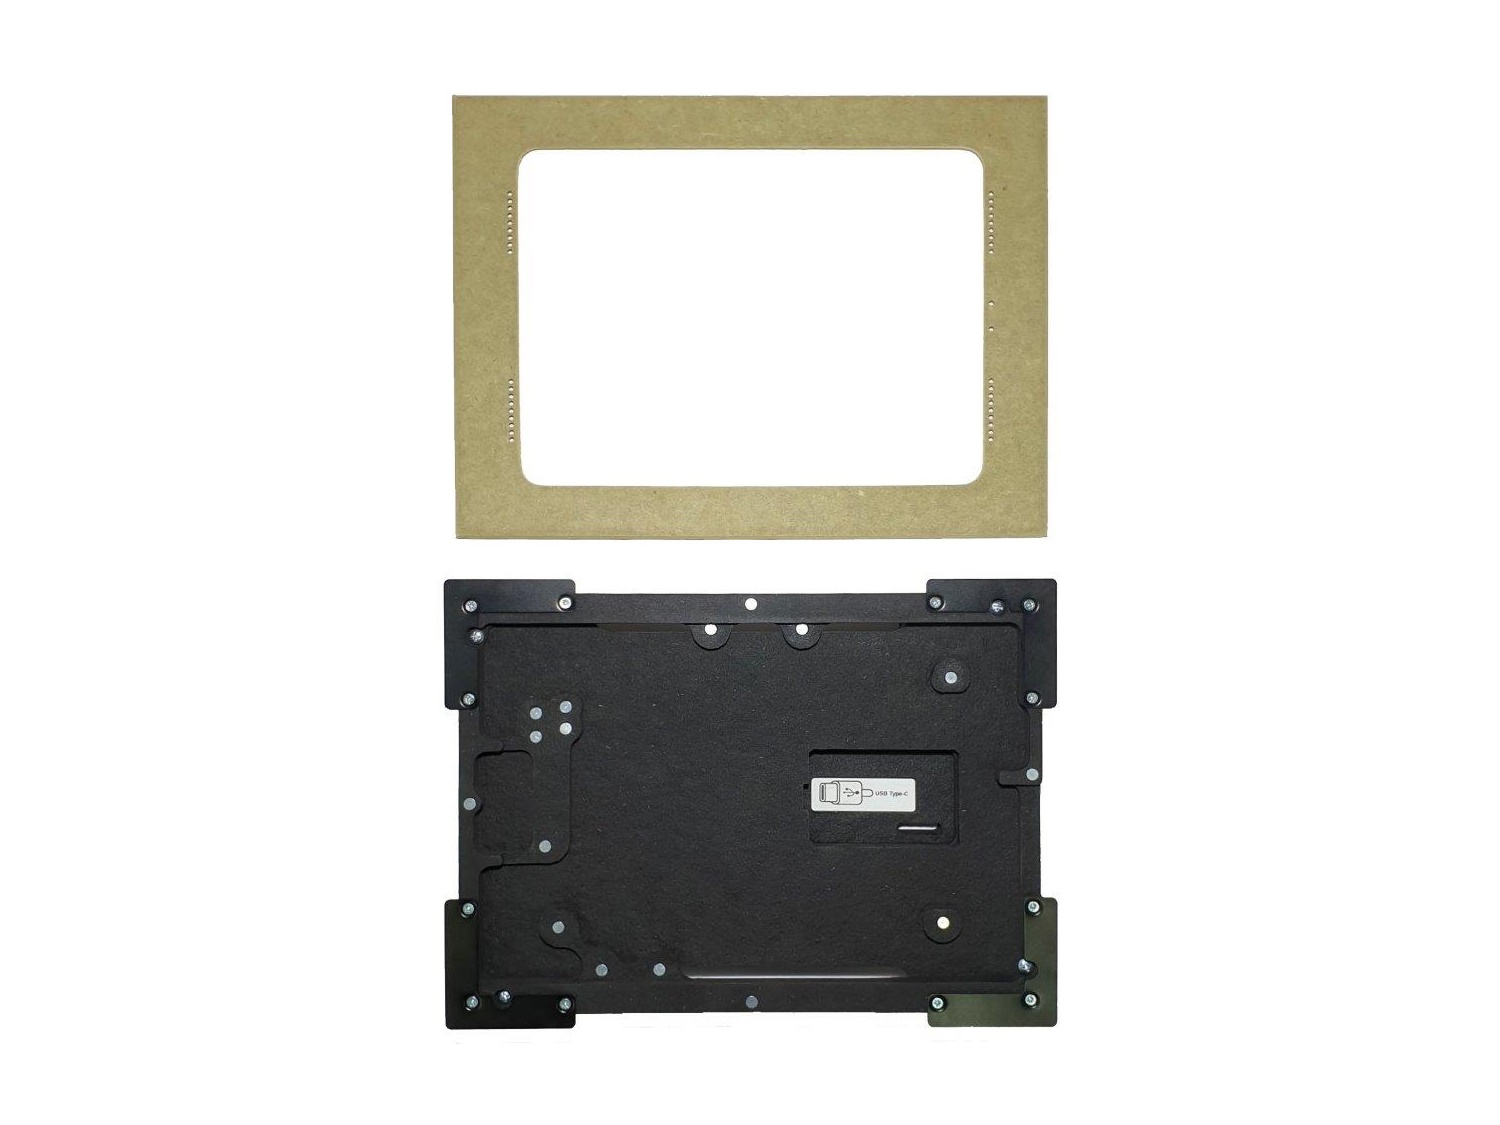 002-1-838-WO Retrofit Mount for Ipad Pro 11 inch 2nd Gen (Unpainted) by Wall-Smart